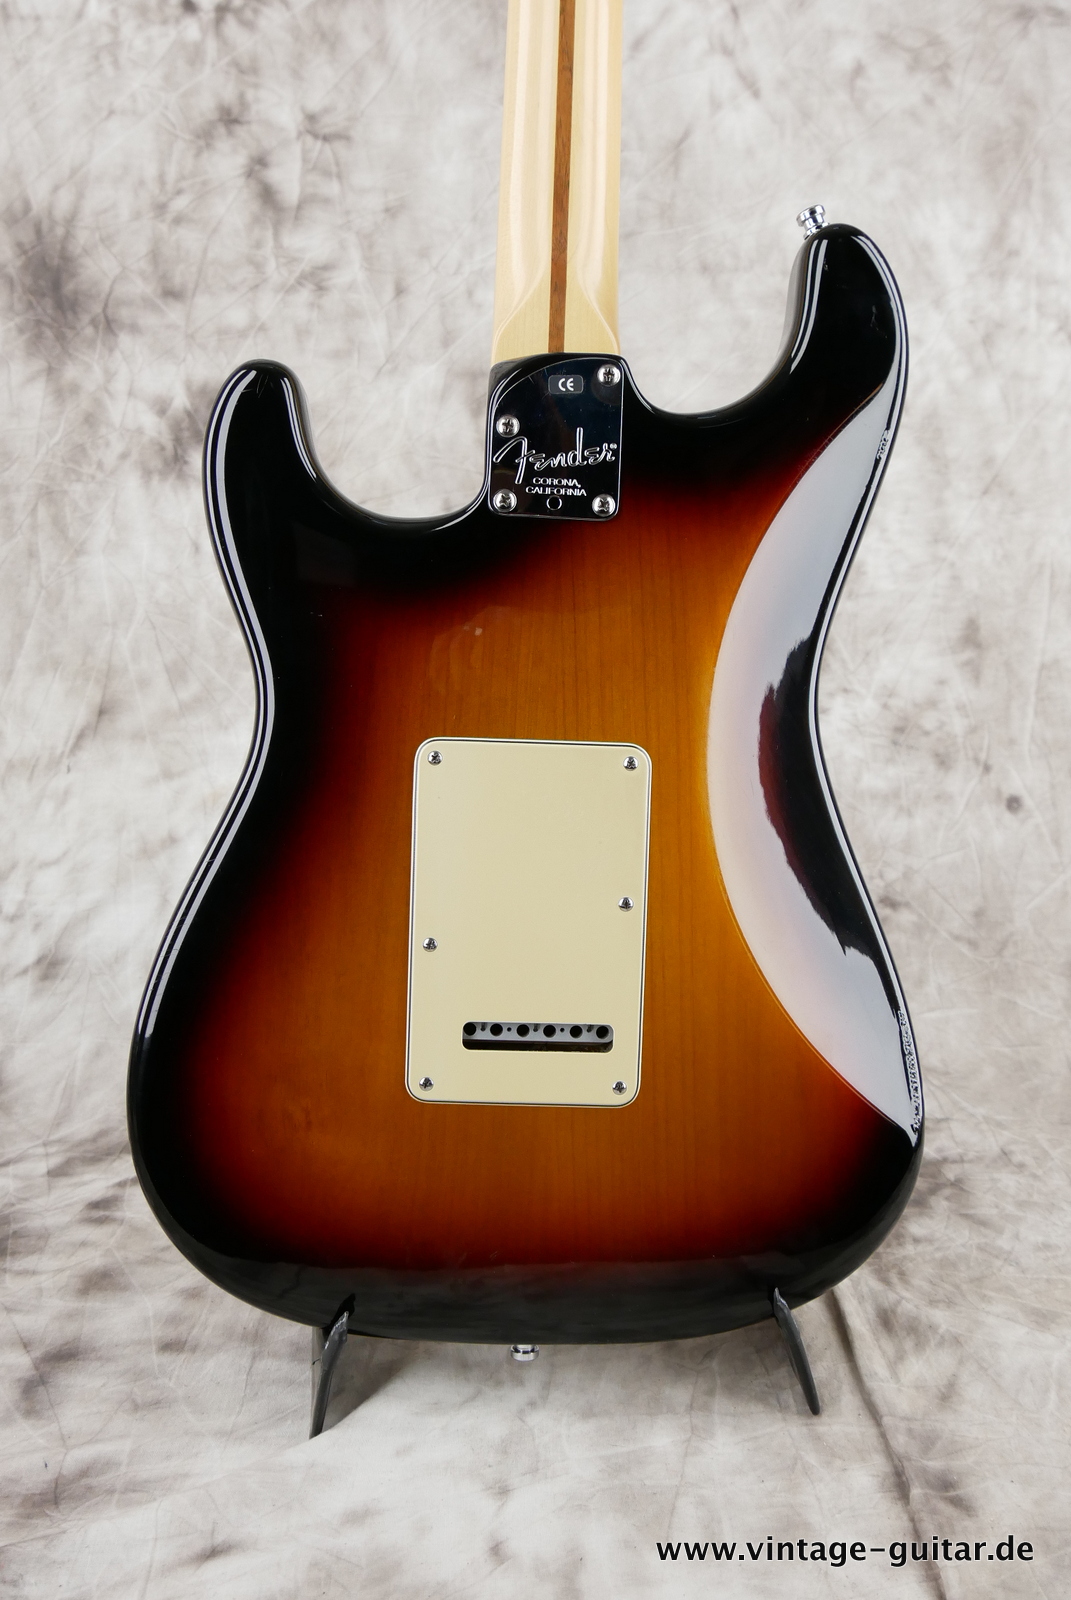 img/vintage/5280/Fender_Startocaster_American_Deluxe_sunburst_samarium-cobalt-noiseless_tremolo_2005-008.JPG